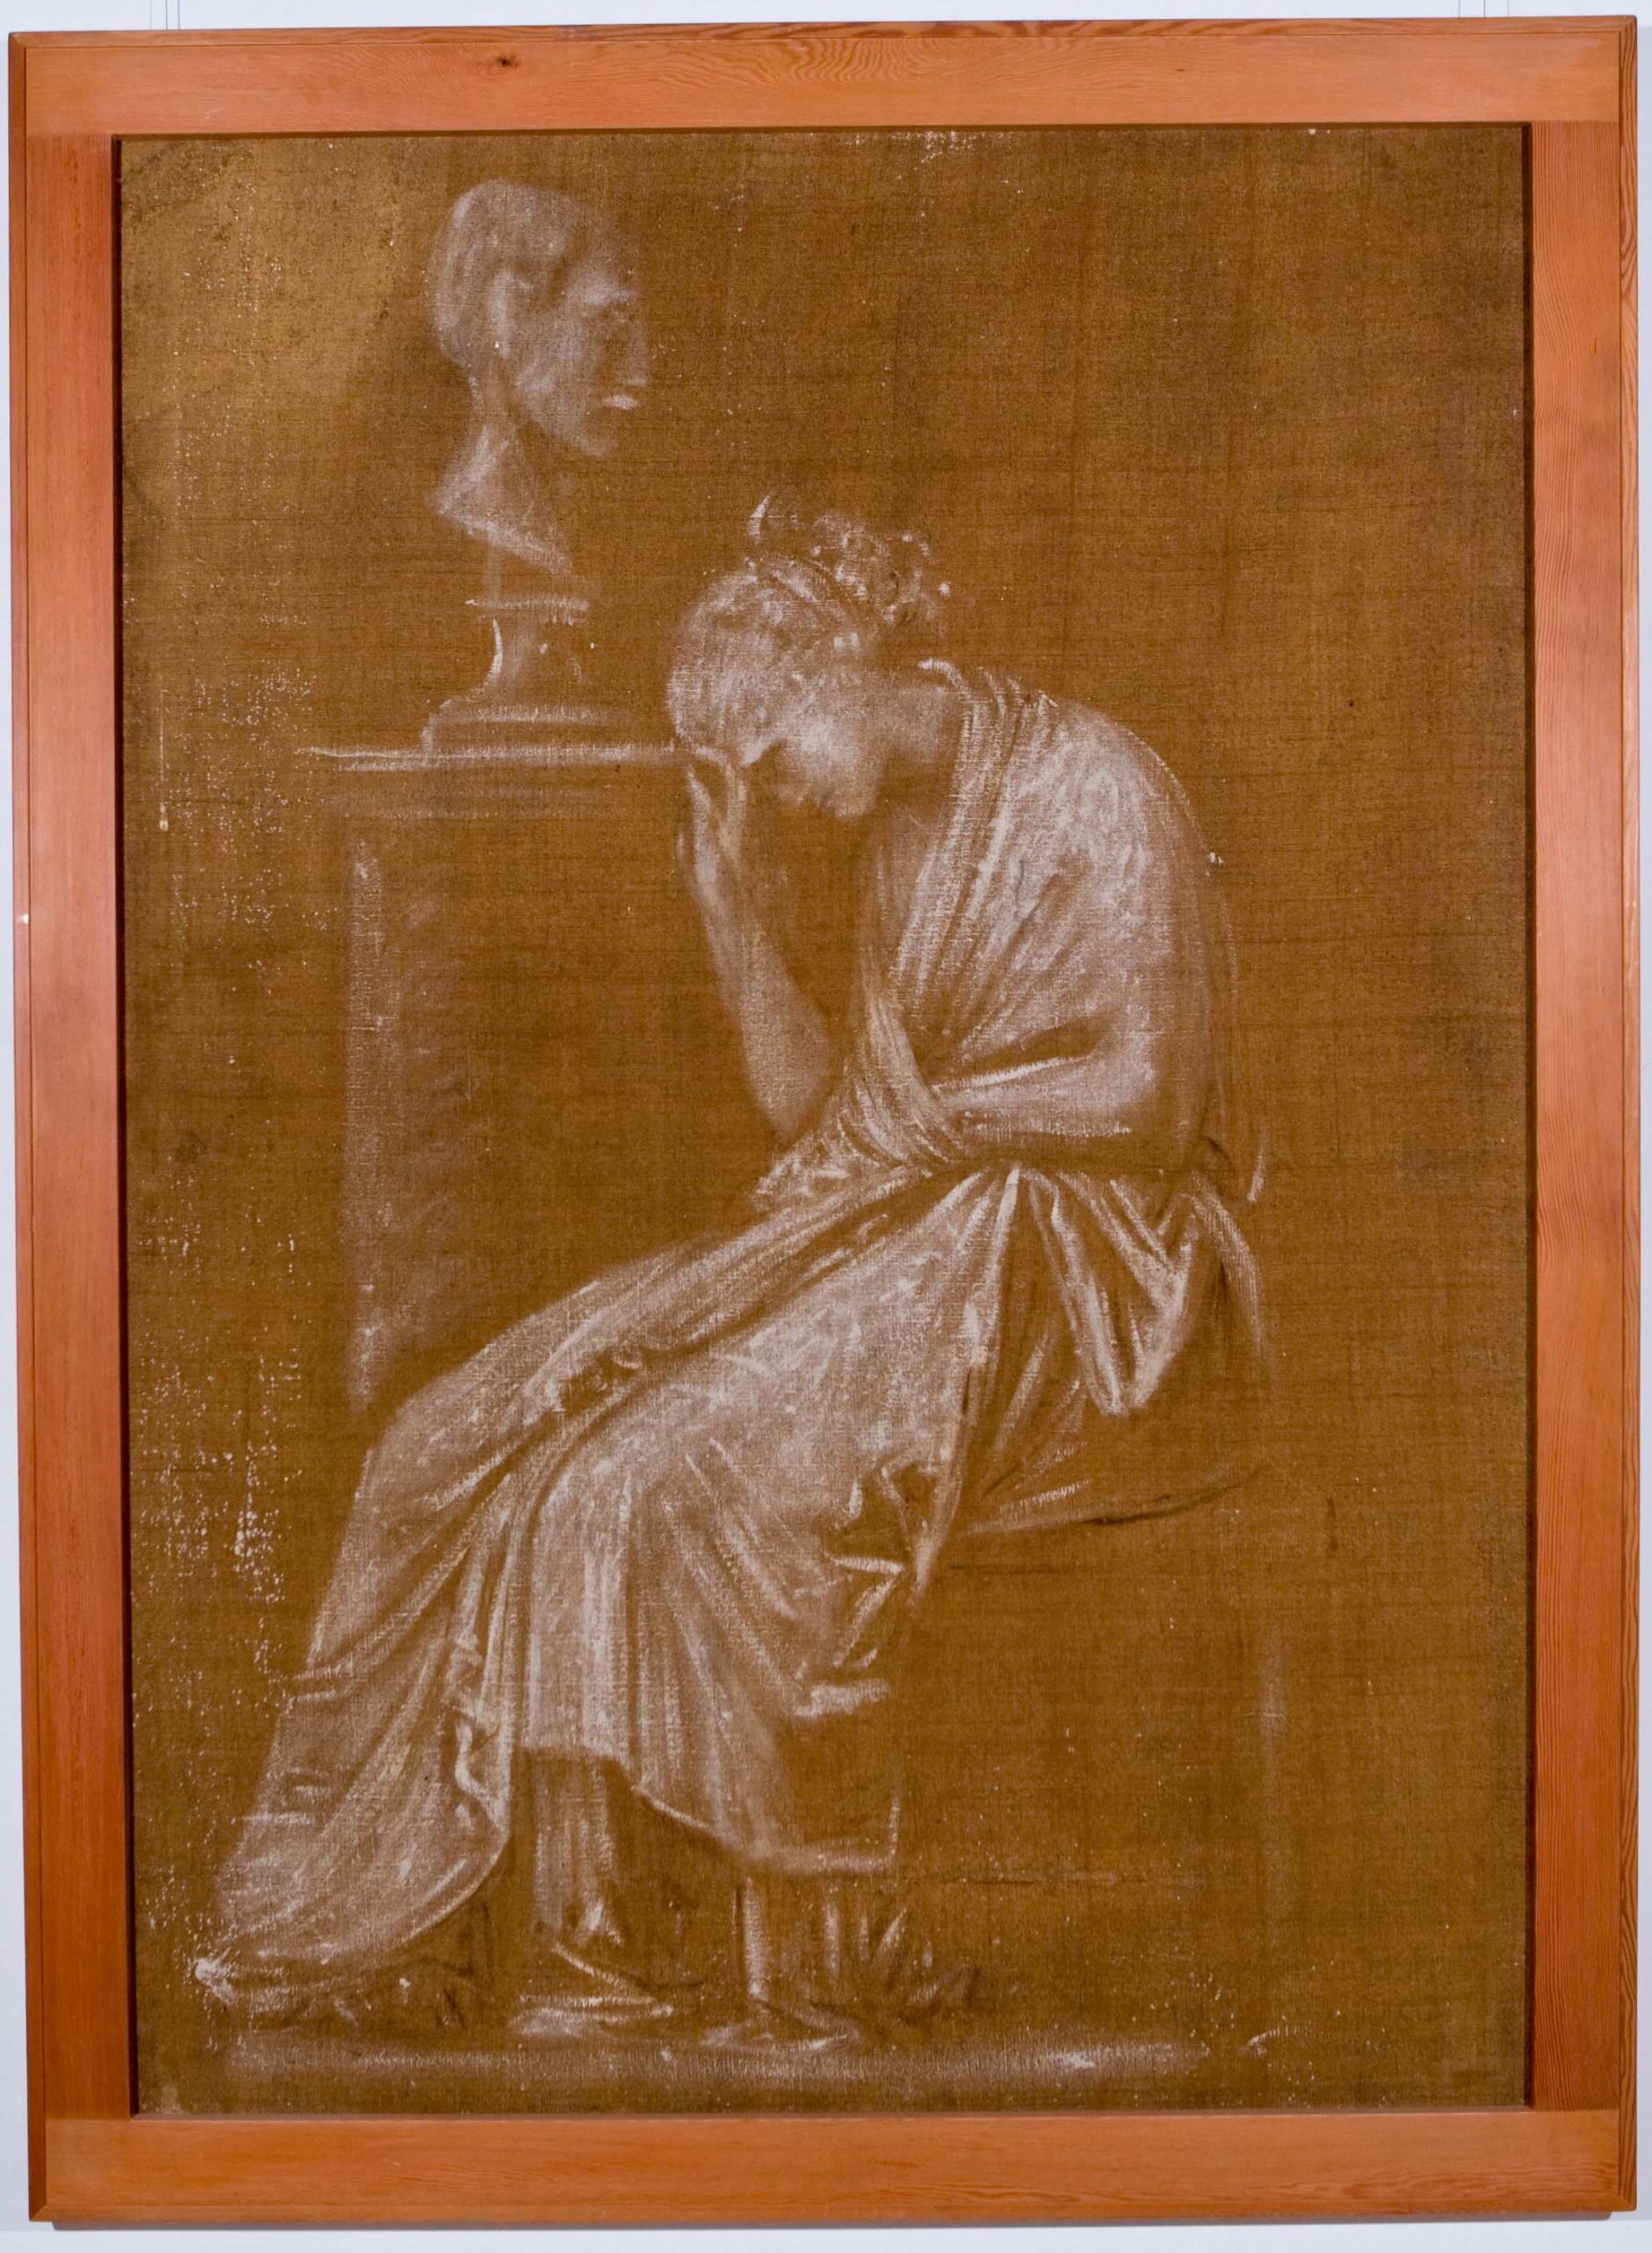 Antonio Canova (1757 - 1822) Donna piangente accanto a un busto, 1806 c., tecnica mista su tela, 173x121cm Bassano del Grappa, Museo Civico